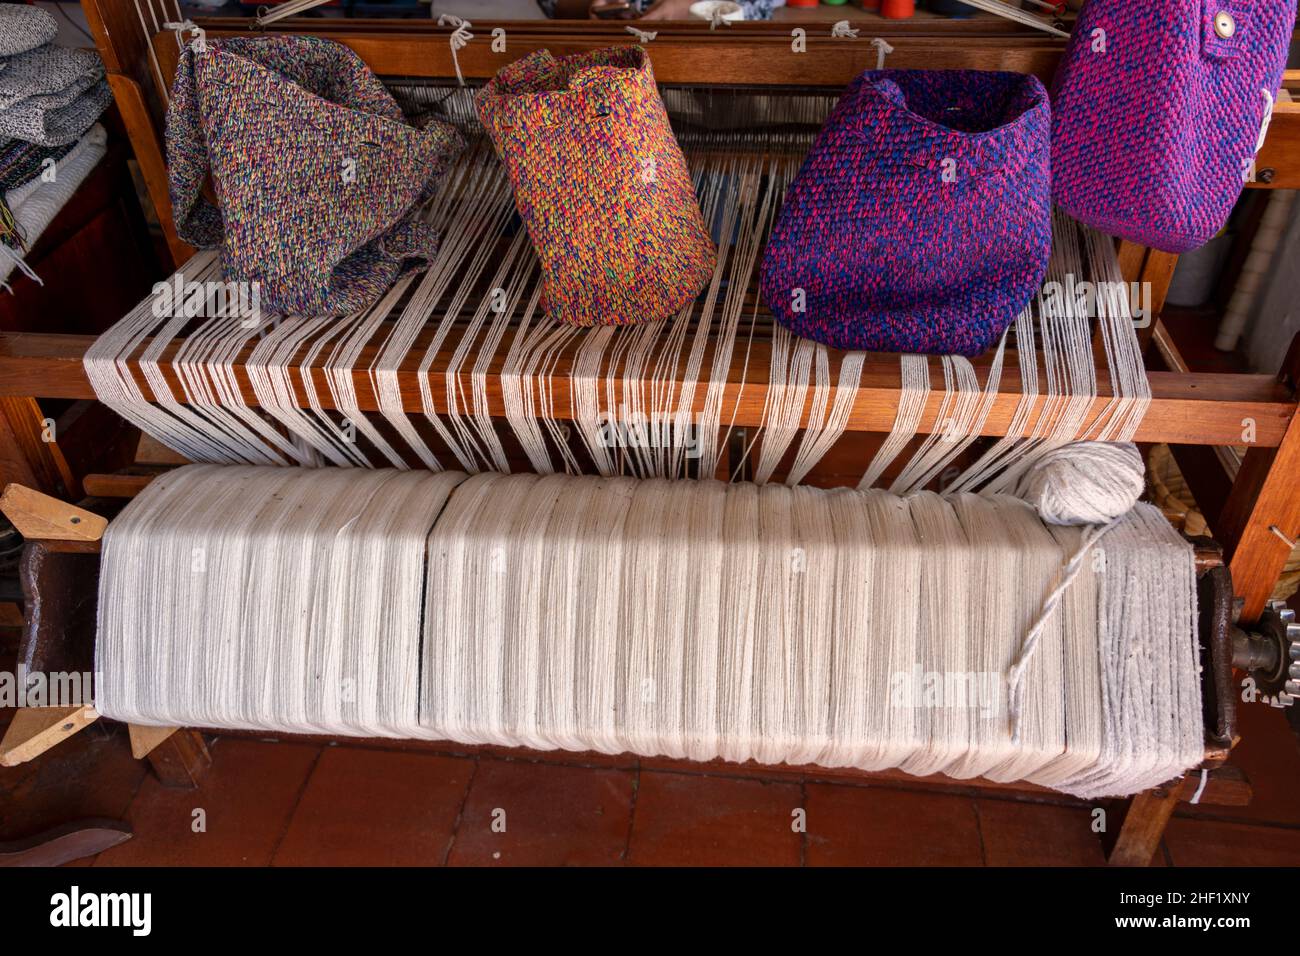 Locally crafted woven bags, Villa de Leyva, Boyacá, Colombia Stock Photo